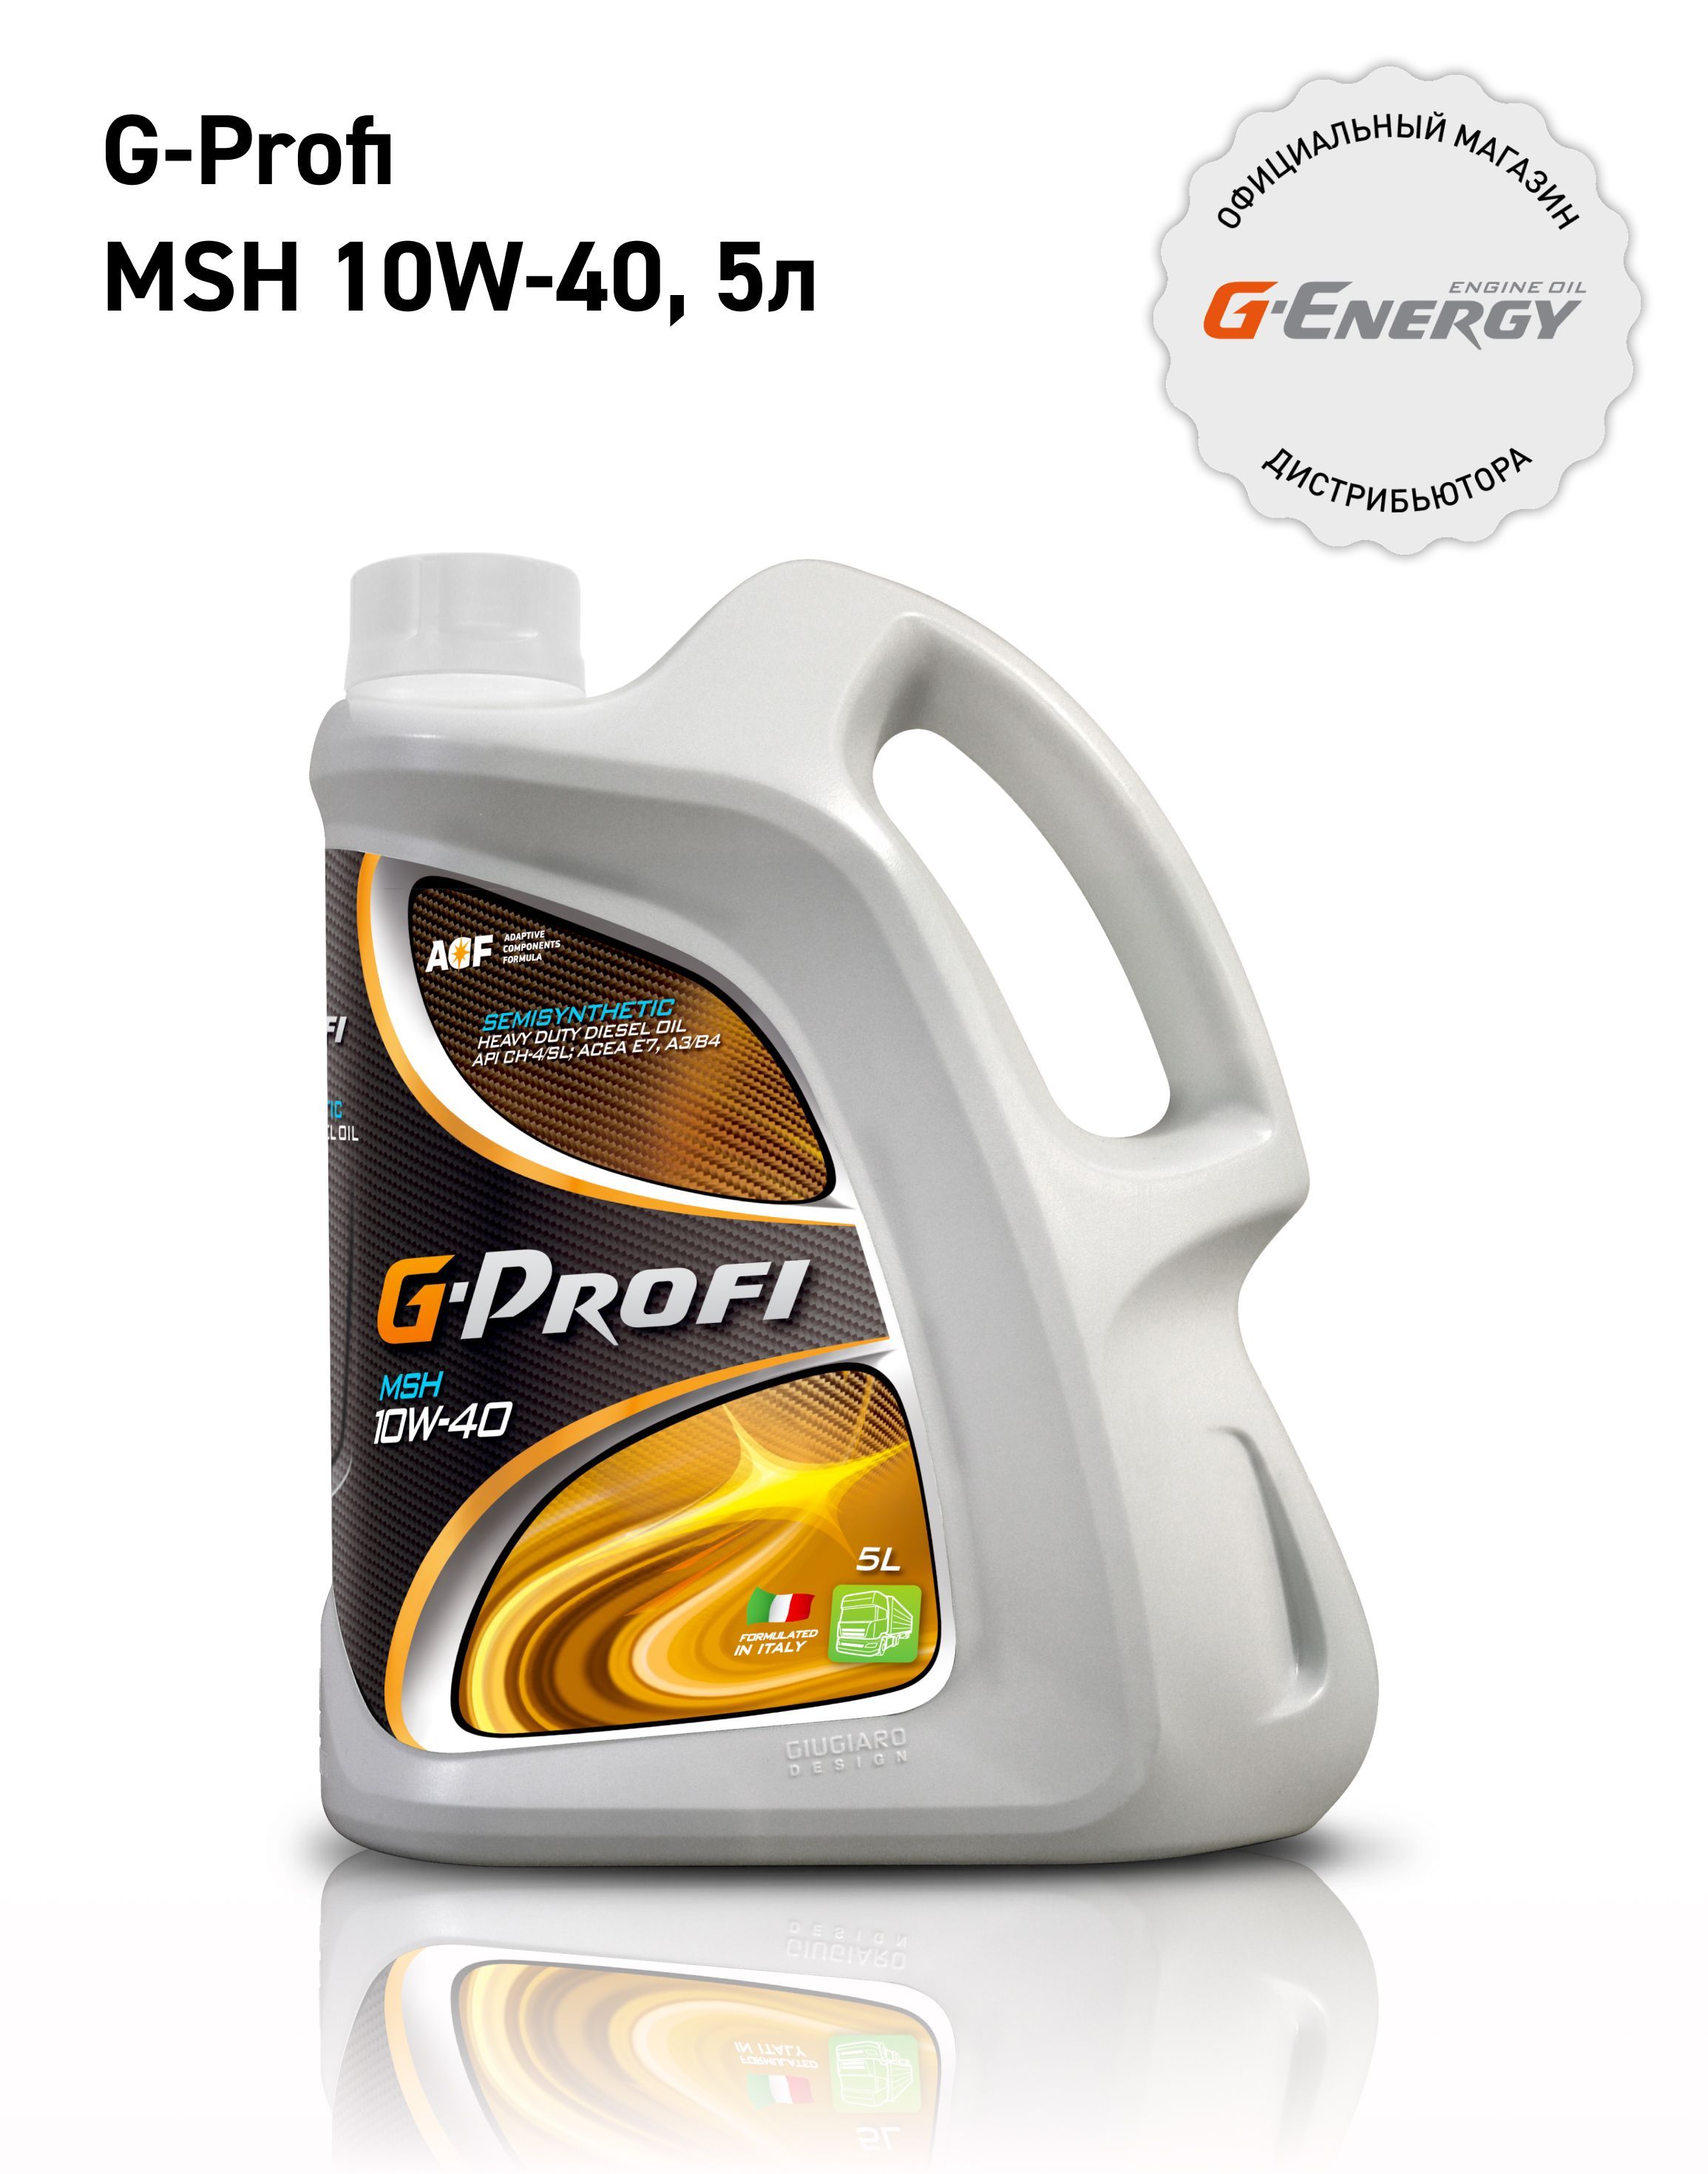 Актив 5 30. G-Energy f Synth 5w-40. Масло g-Energy s Synth 10w-40. Моторное масло g-Energy Expert g 10w-40 5 л. G-Energy 5w30 Synthetic.